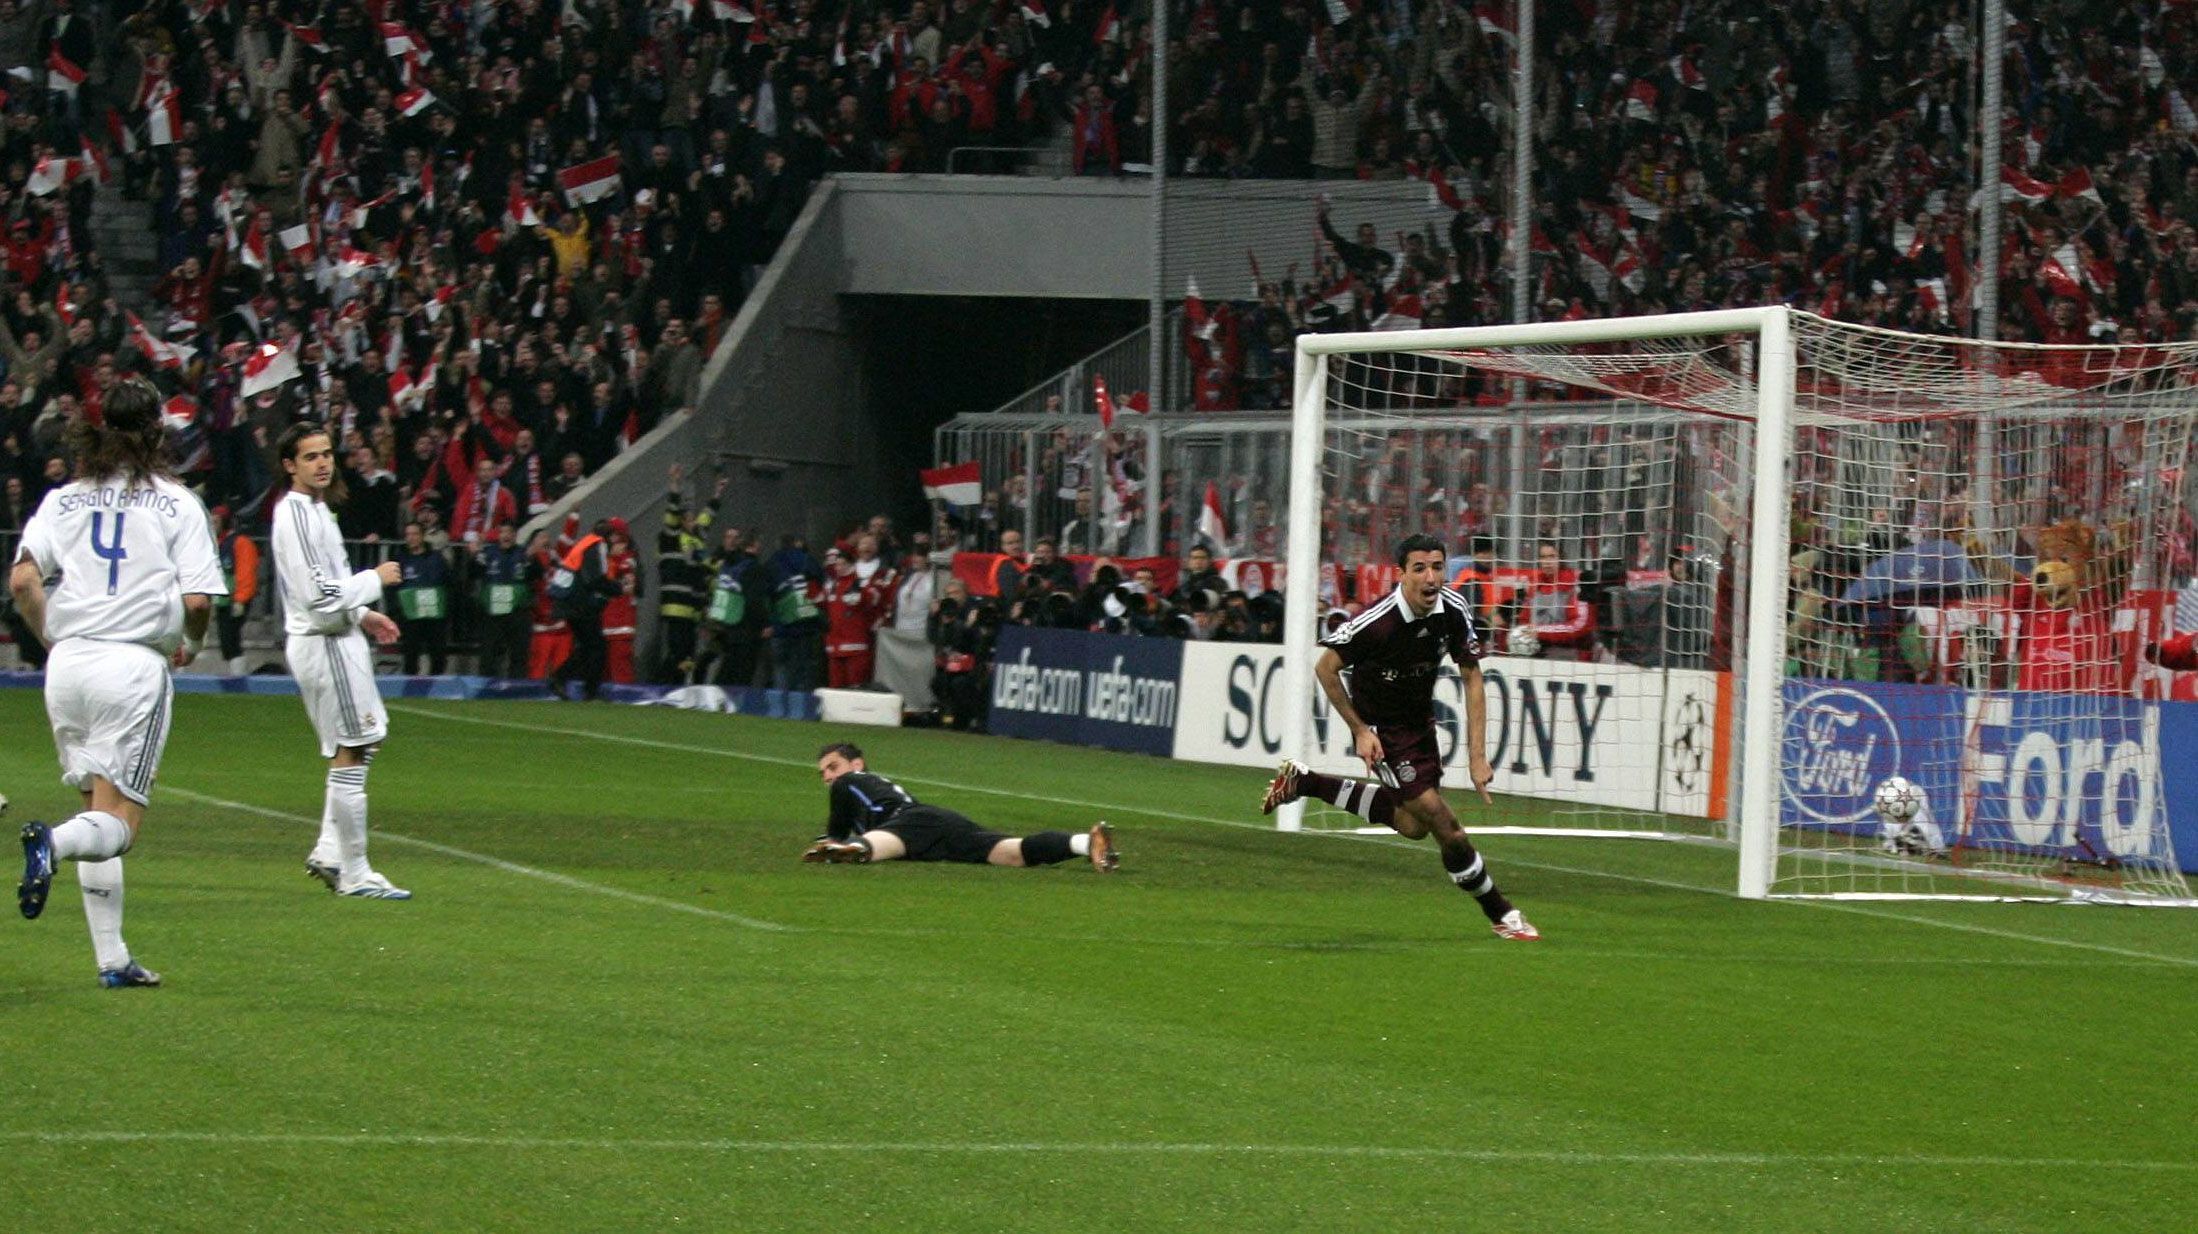 
                <strong>2007 - Achtelfinale</strong><br>
                Nach einem 2:3 Hinspiel ebnet Roy Makaay mit dem schnellsten Champions-League-Treffer aller Zeiten den Weg in die nächste Runde.
              